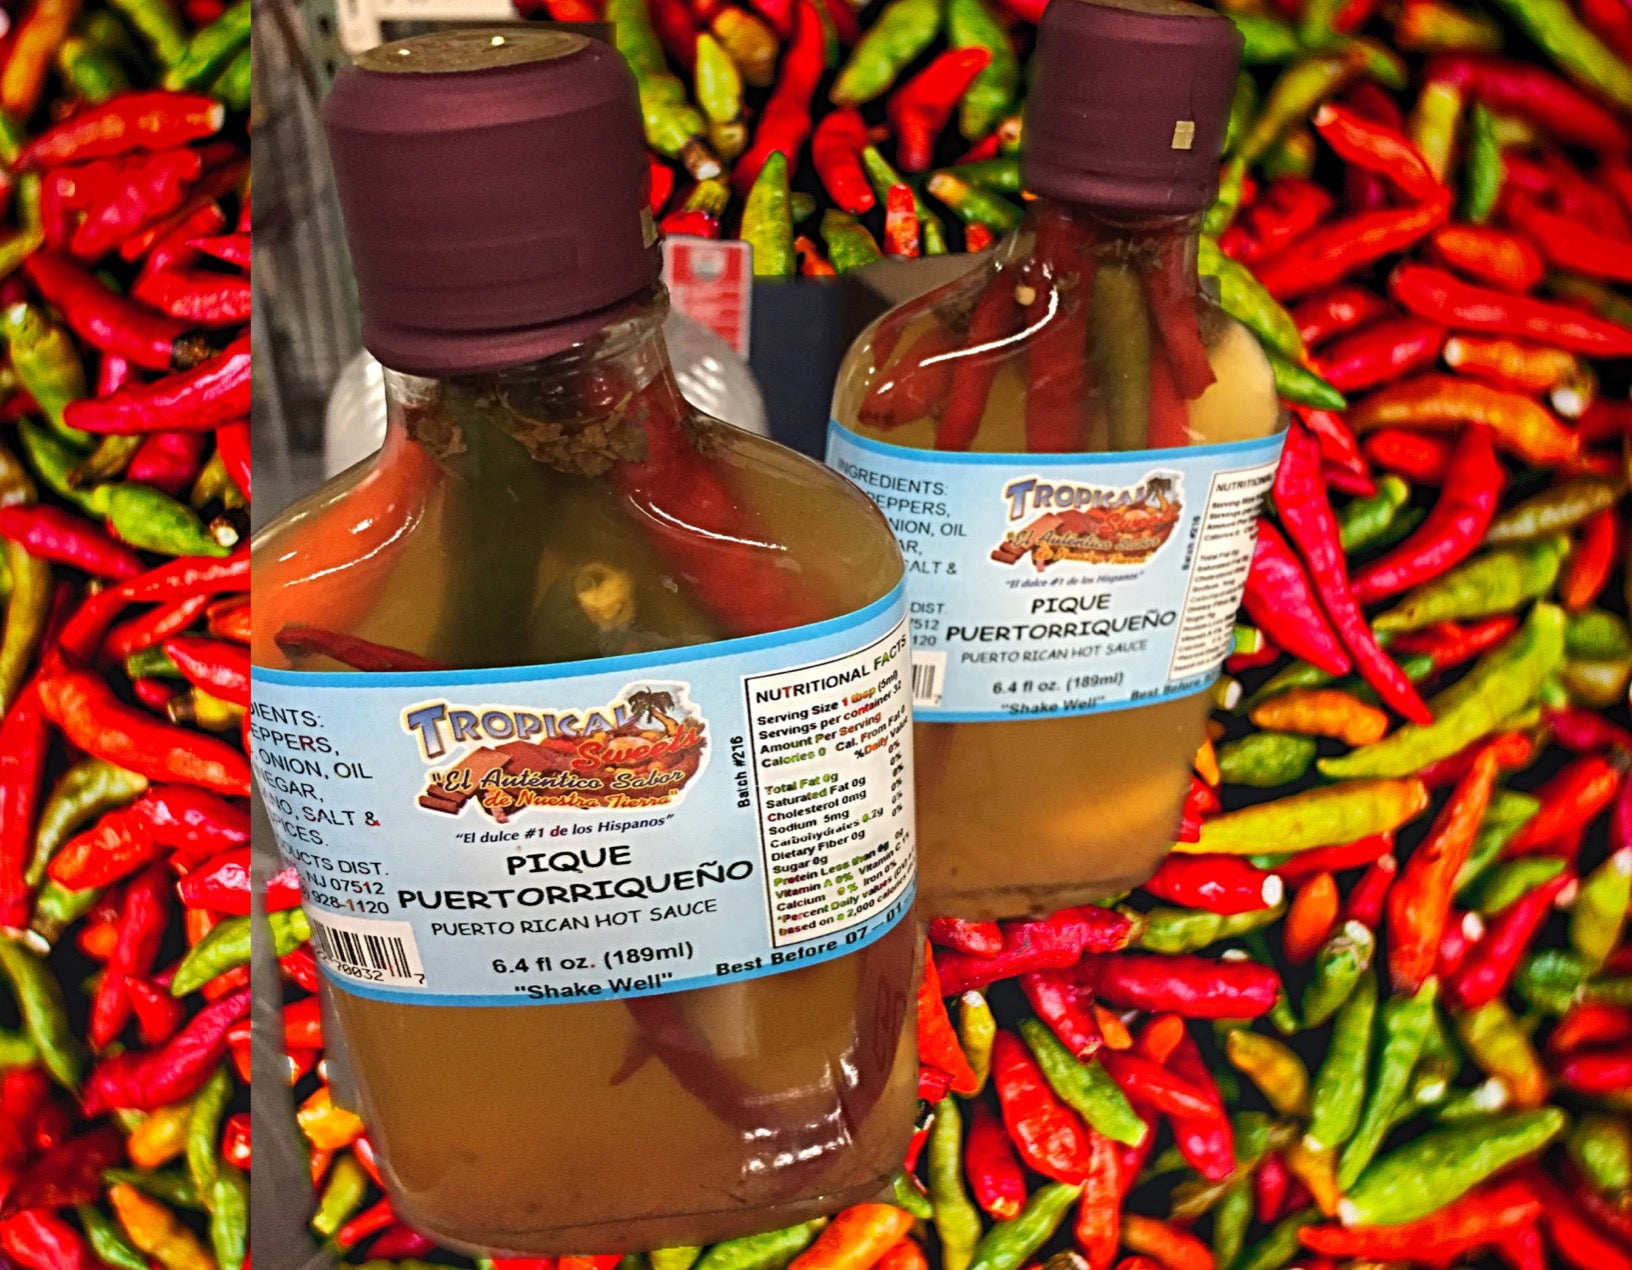 Pique Puertorriqueño (Puerto Rican Hot Sauce)